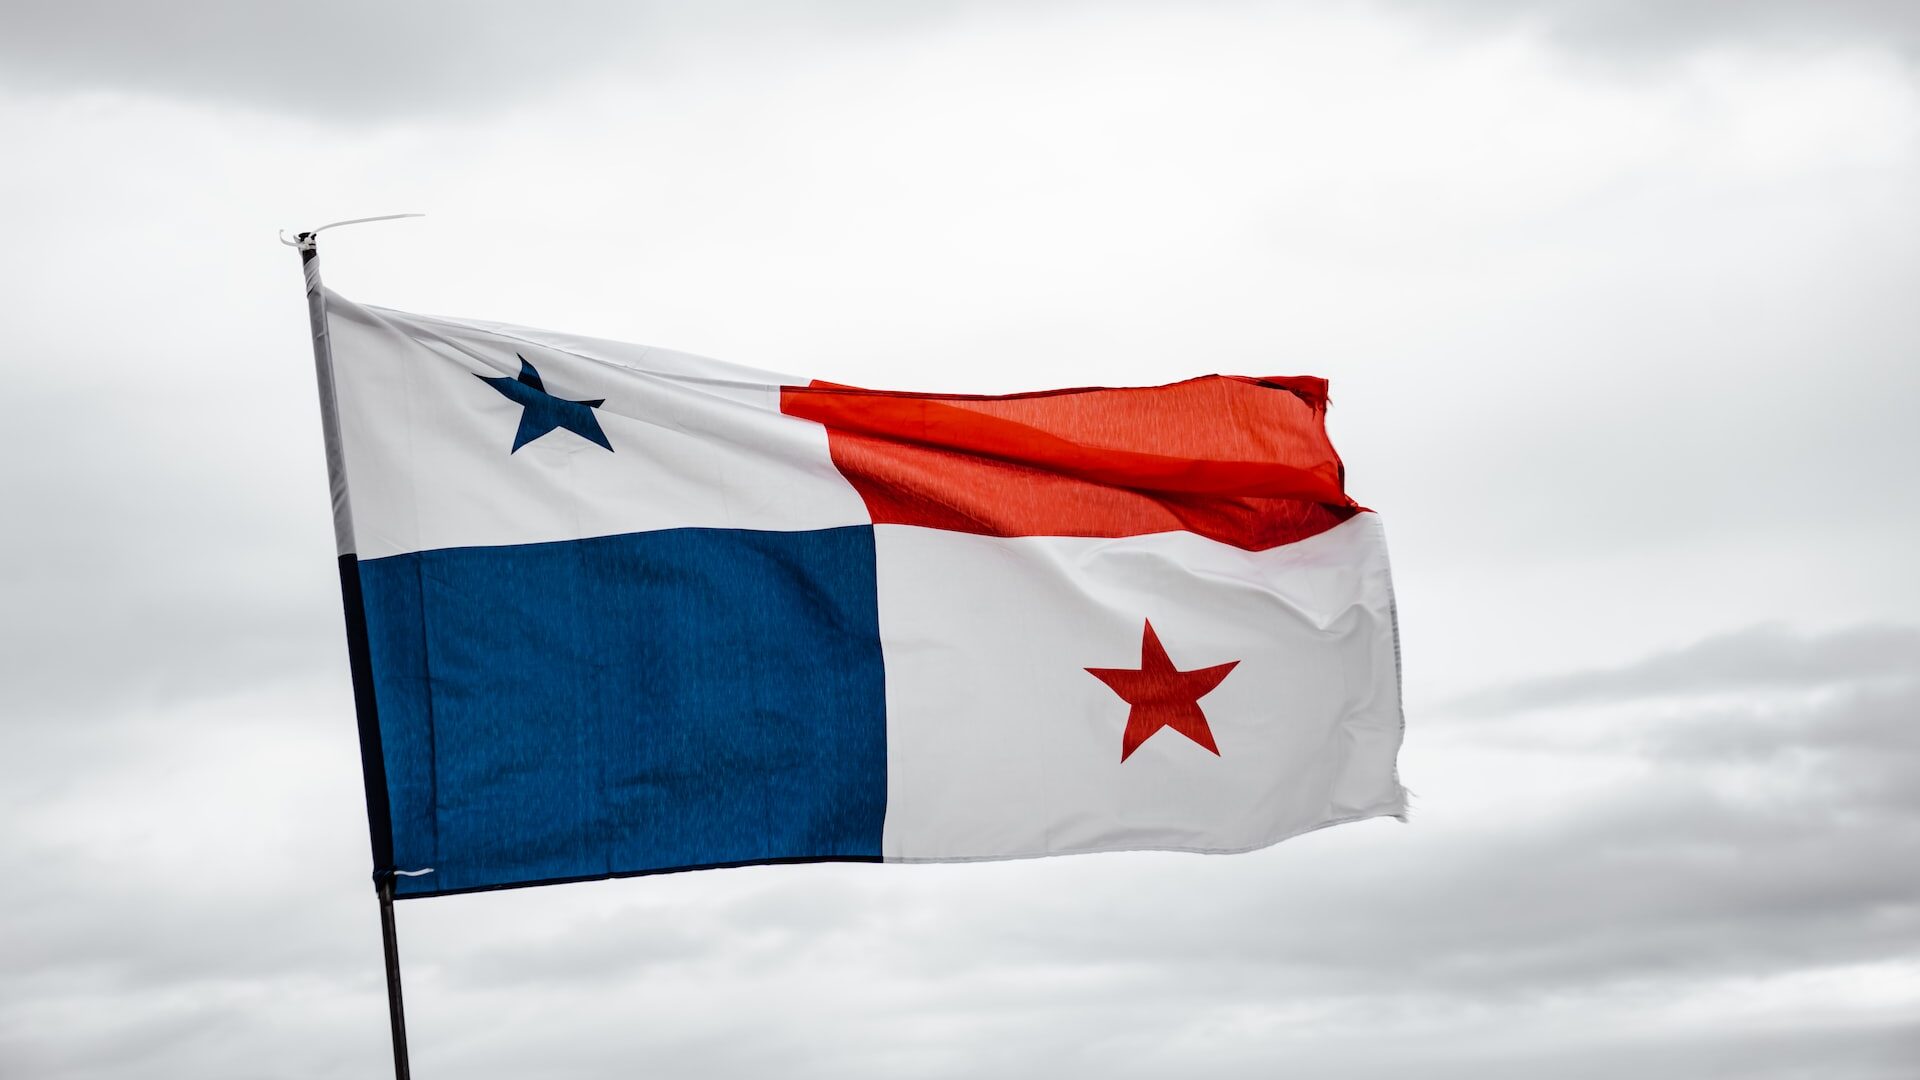 パナマはアメリカの都合で建国された コロンビアからの分離独立をめぐる複数説まとめ ゆる中南米研究部